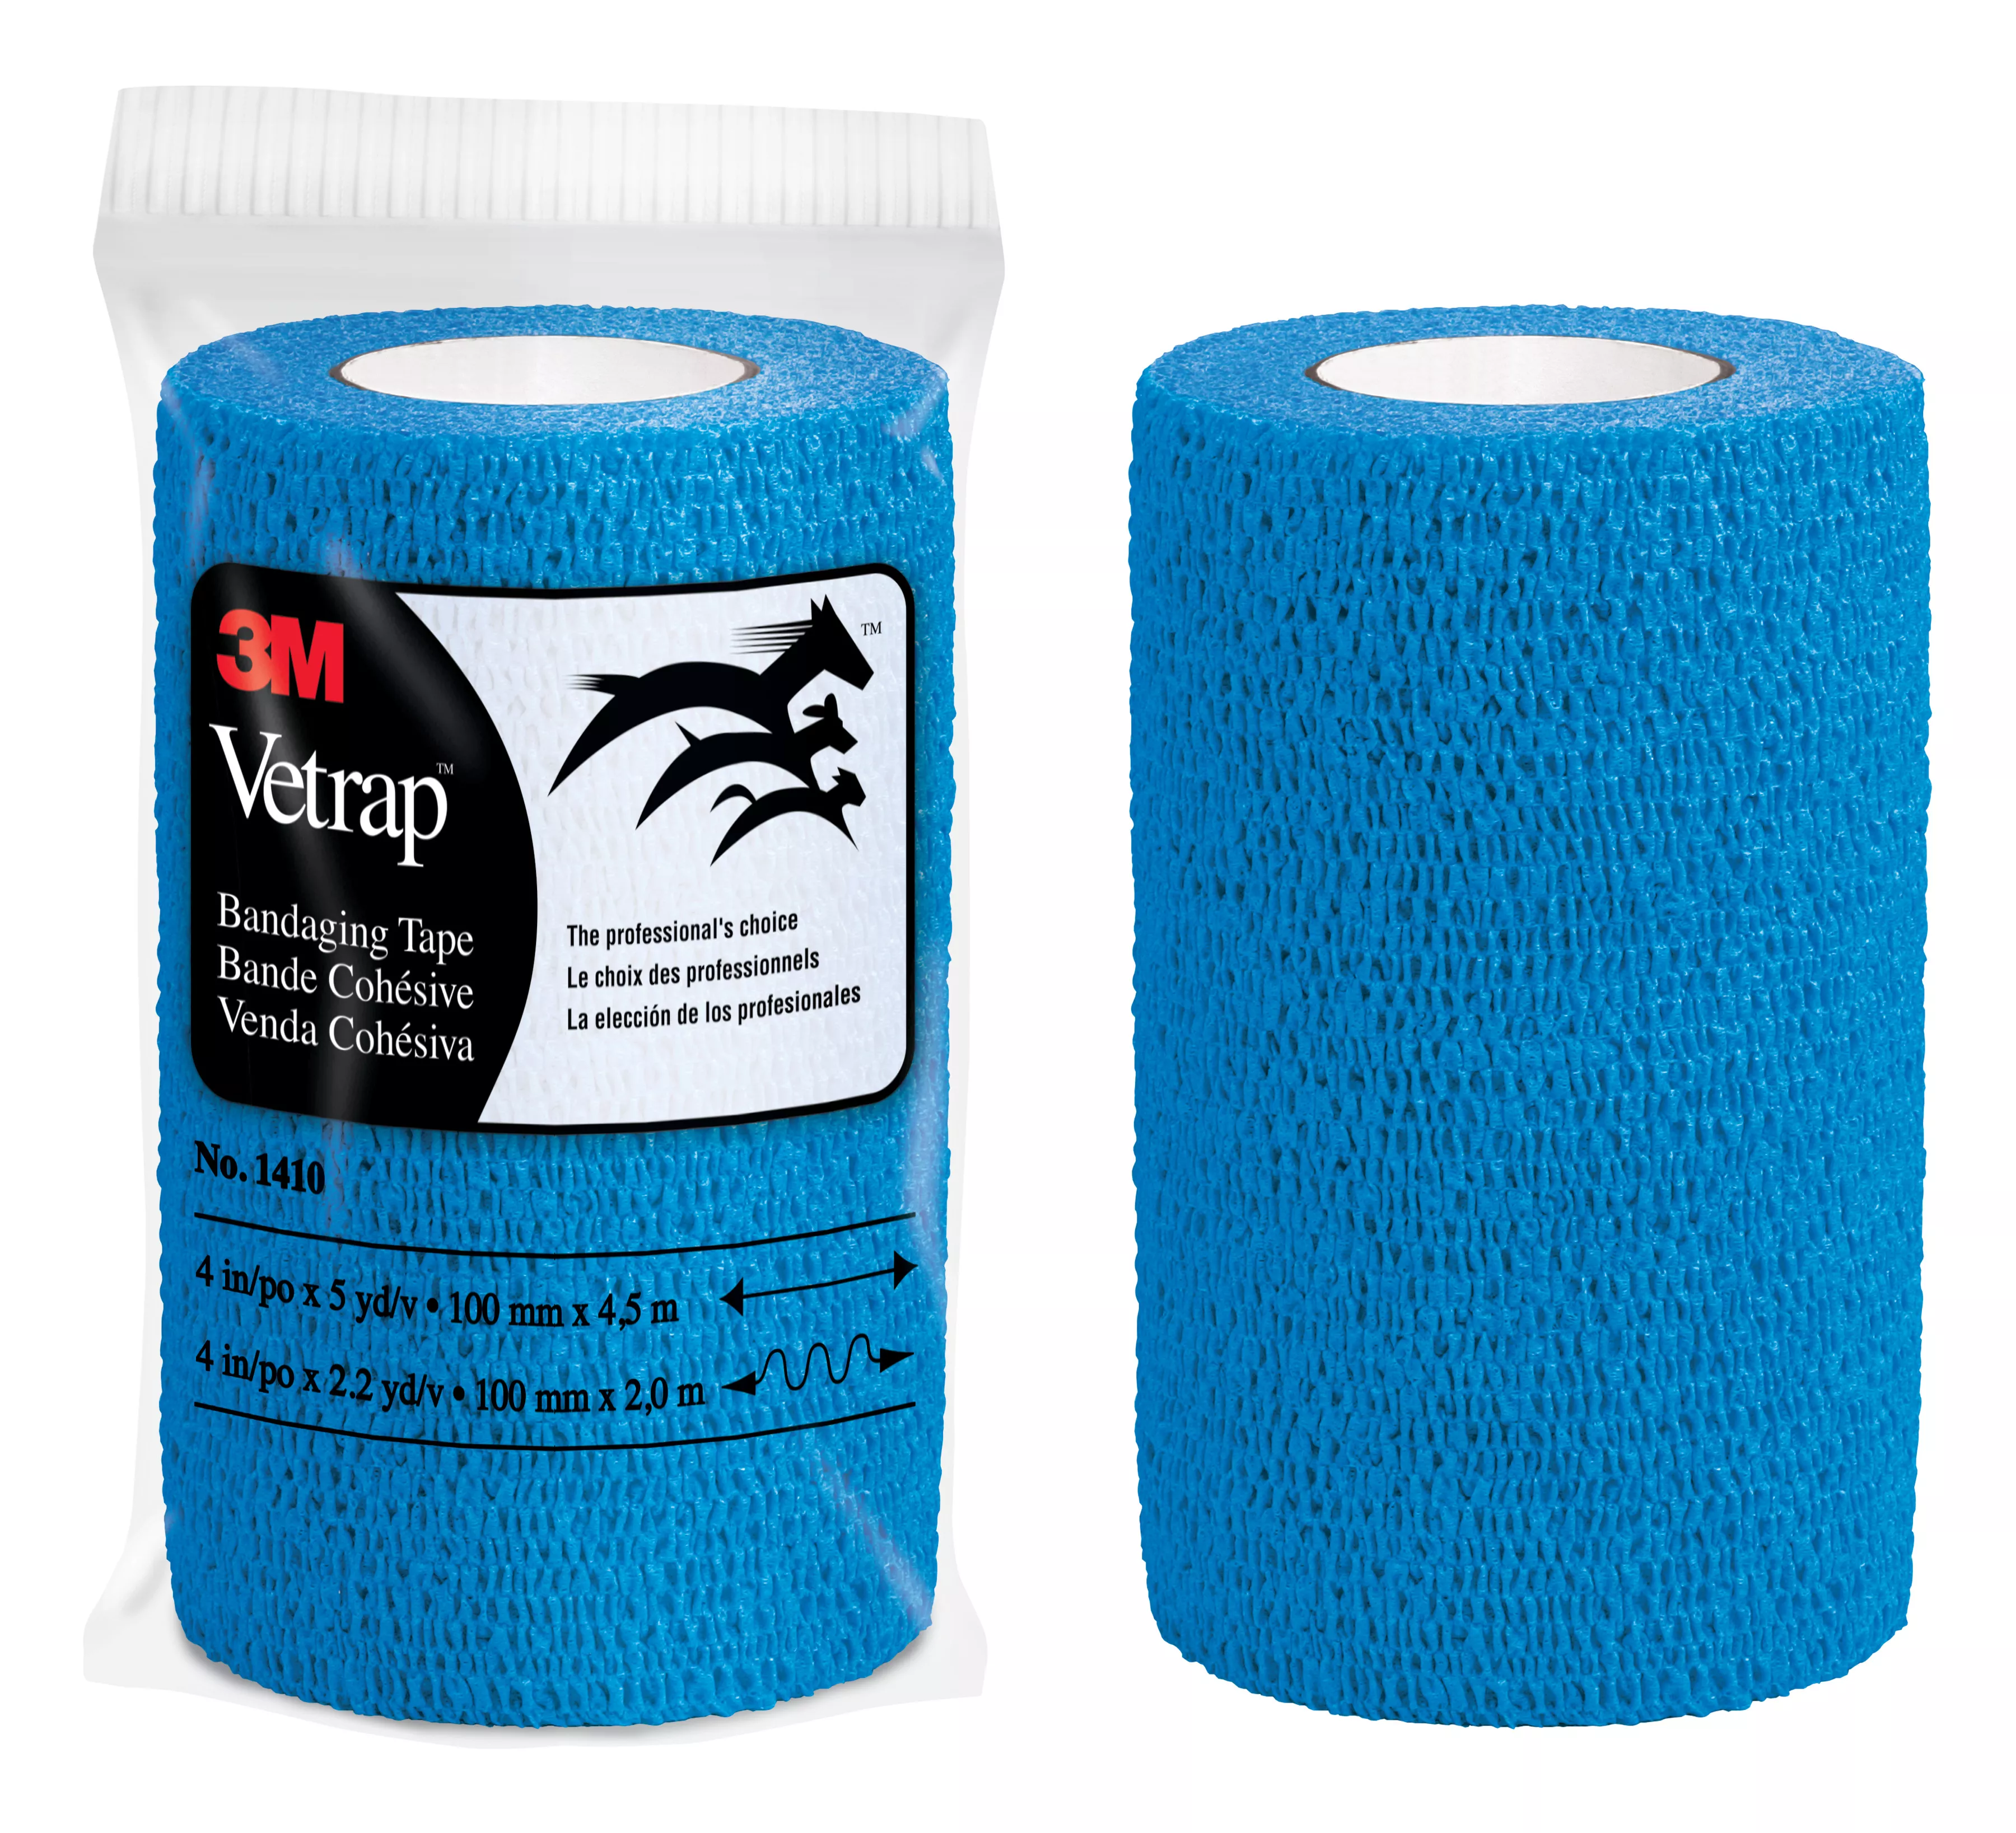 3M™ Vetrap™ Bandaging Tape 1410B-18, Blue, 4 in x 5 yd (100 mm x 4.5 m), 18 Rolls/Case